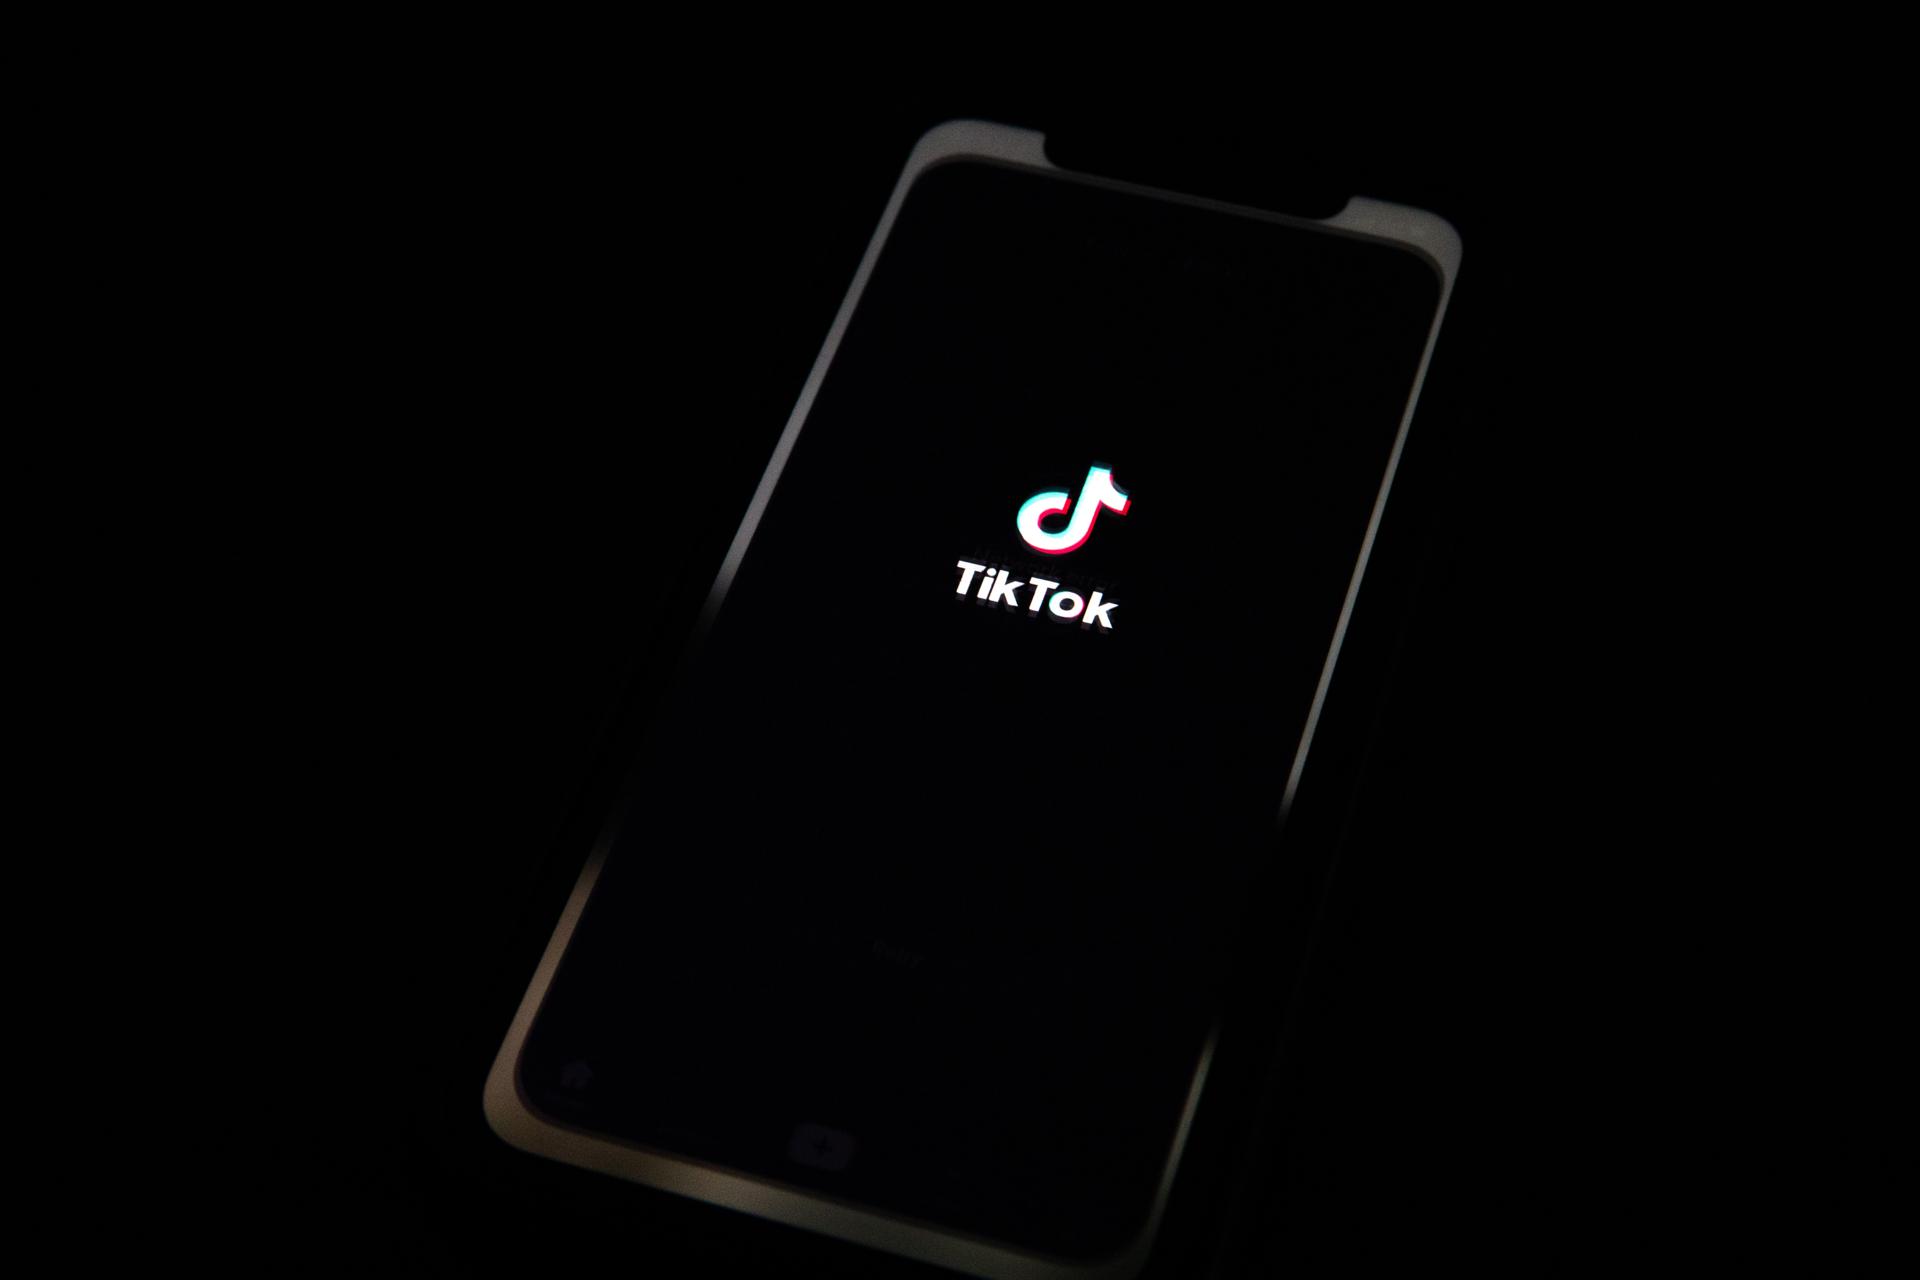 La red social TikTok se adentra en la televisión con un acuerdo con Vevo